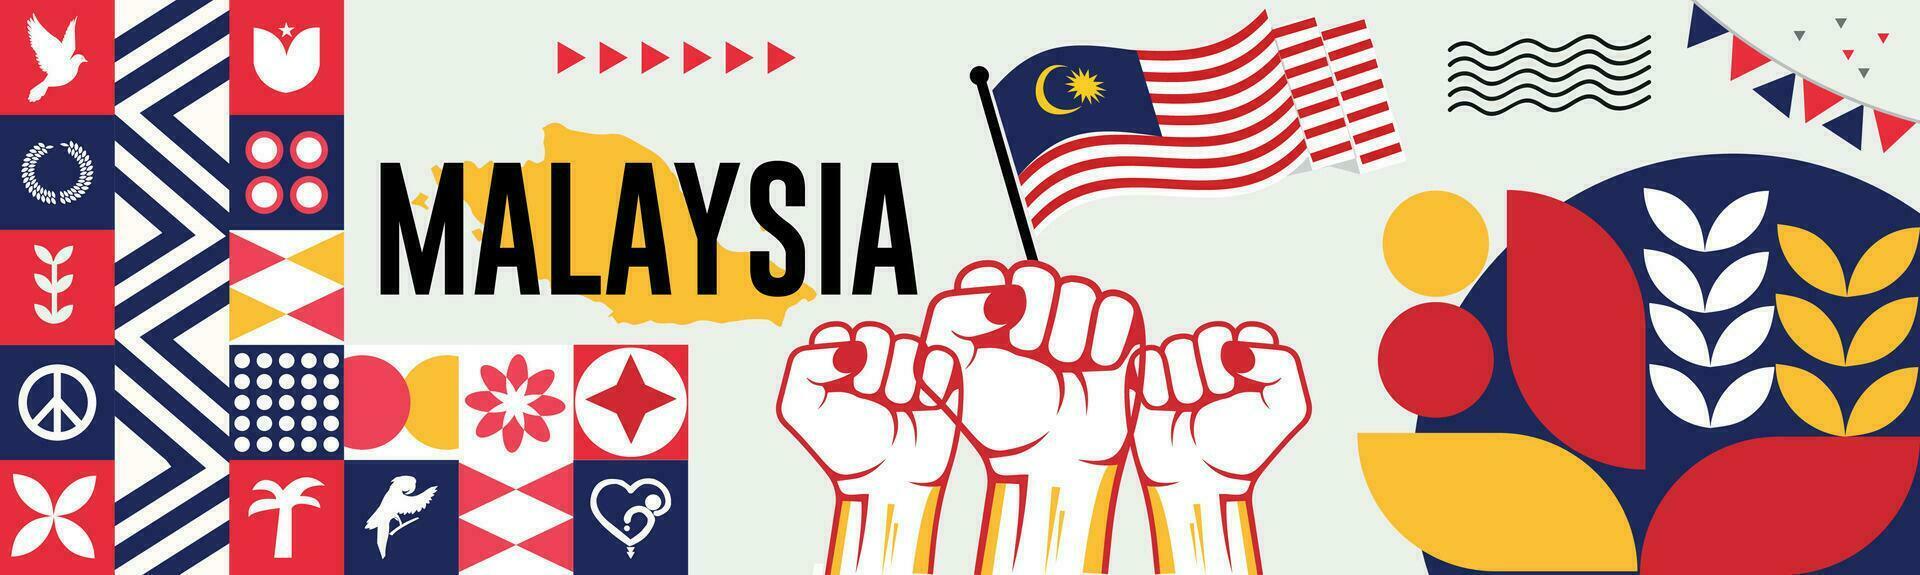 Malasia nacional día bandera con mapa, bandera colores tema antecedentes y geométrico resumen retro moderno colorido diseño con elevado manos o puños vector